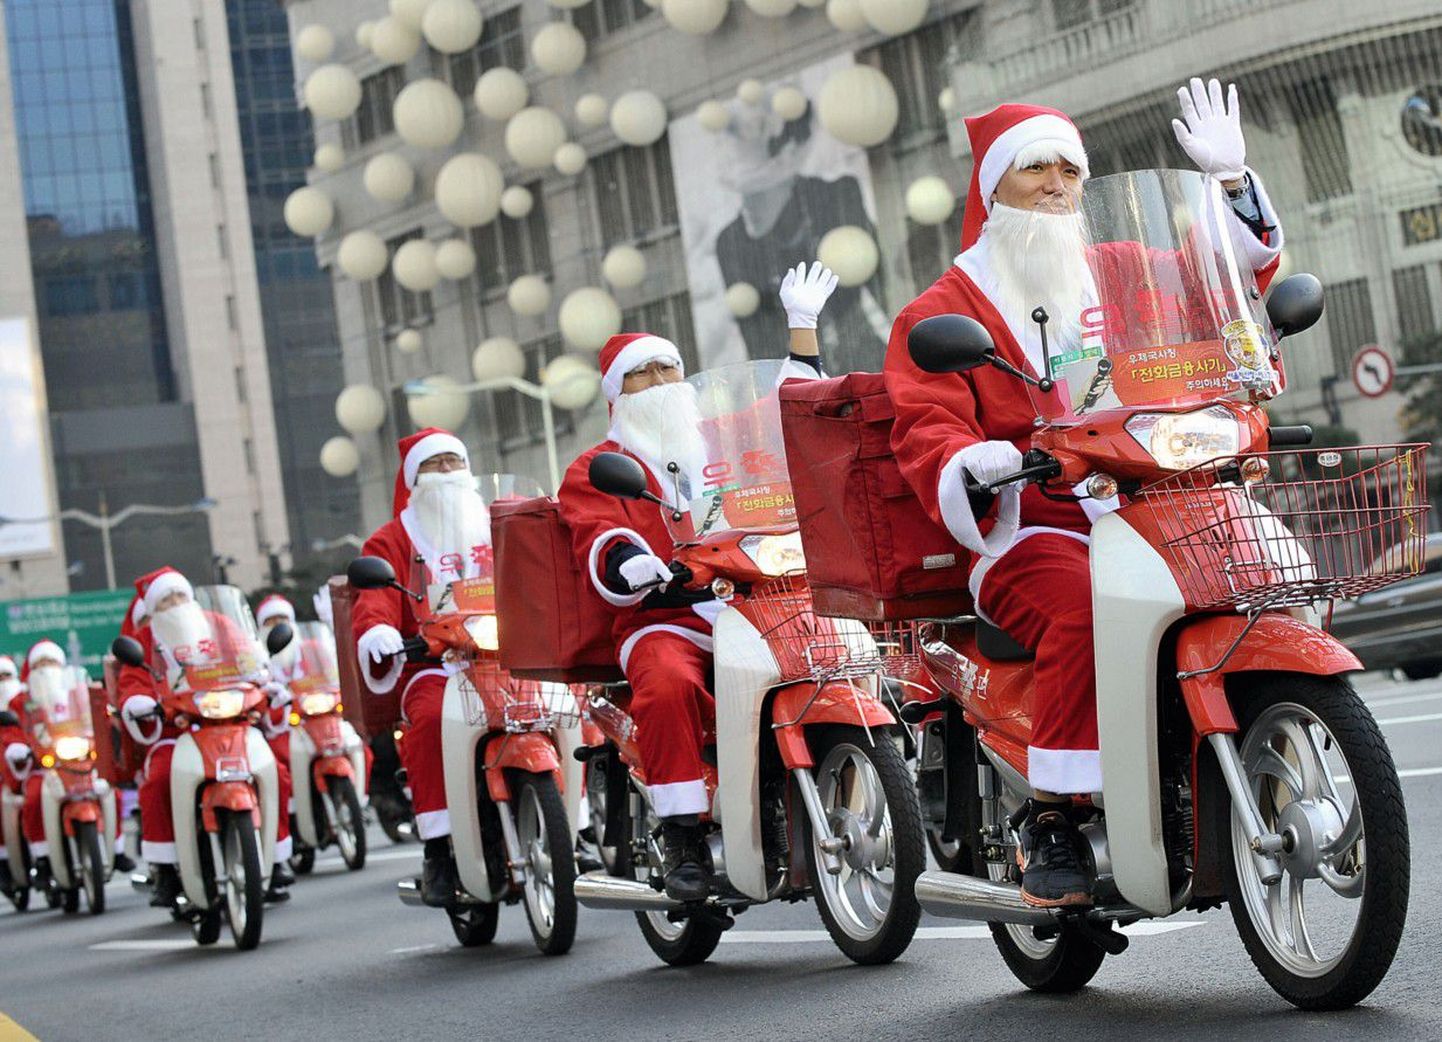 В Сеуле санта-клаусы развозят подарки не по старинке на лошади, а на мотоцик­лах.